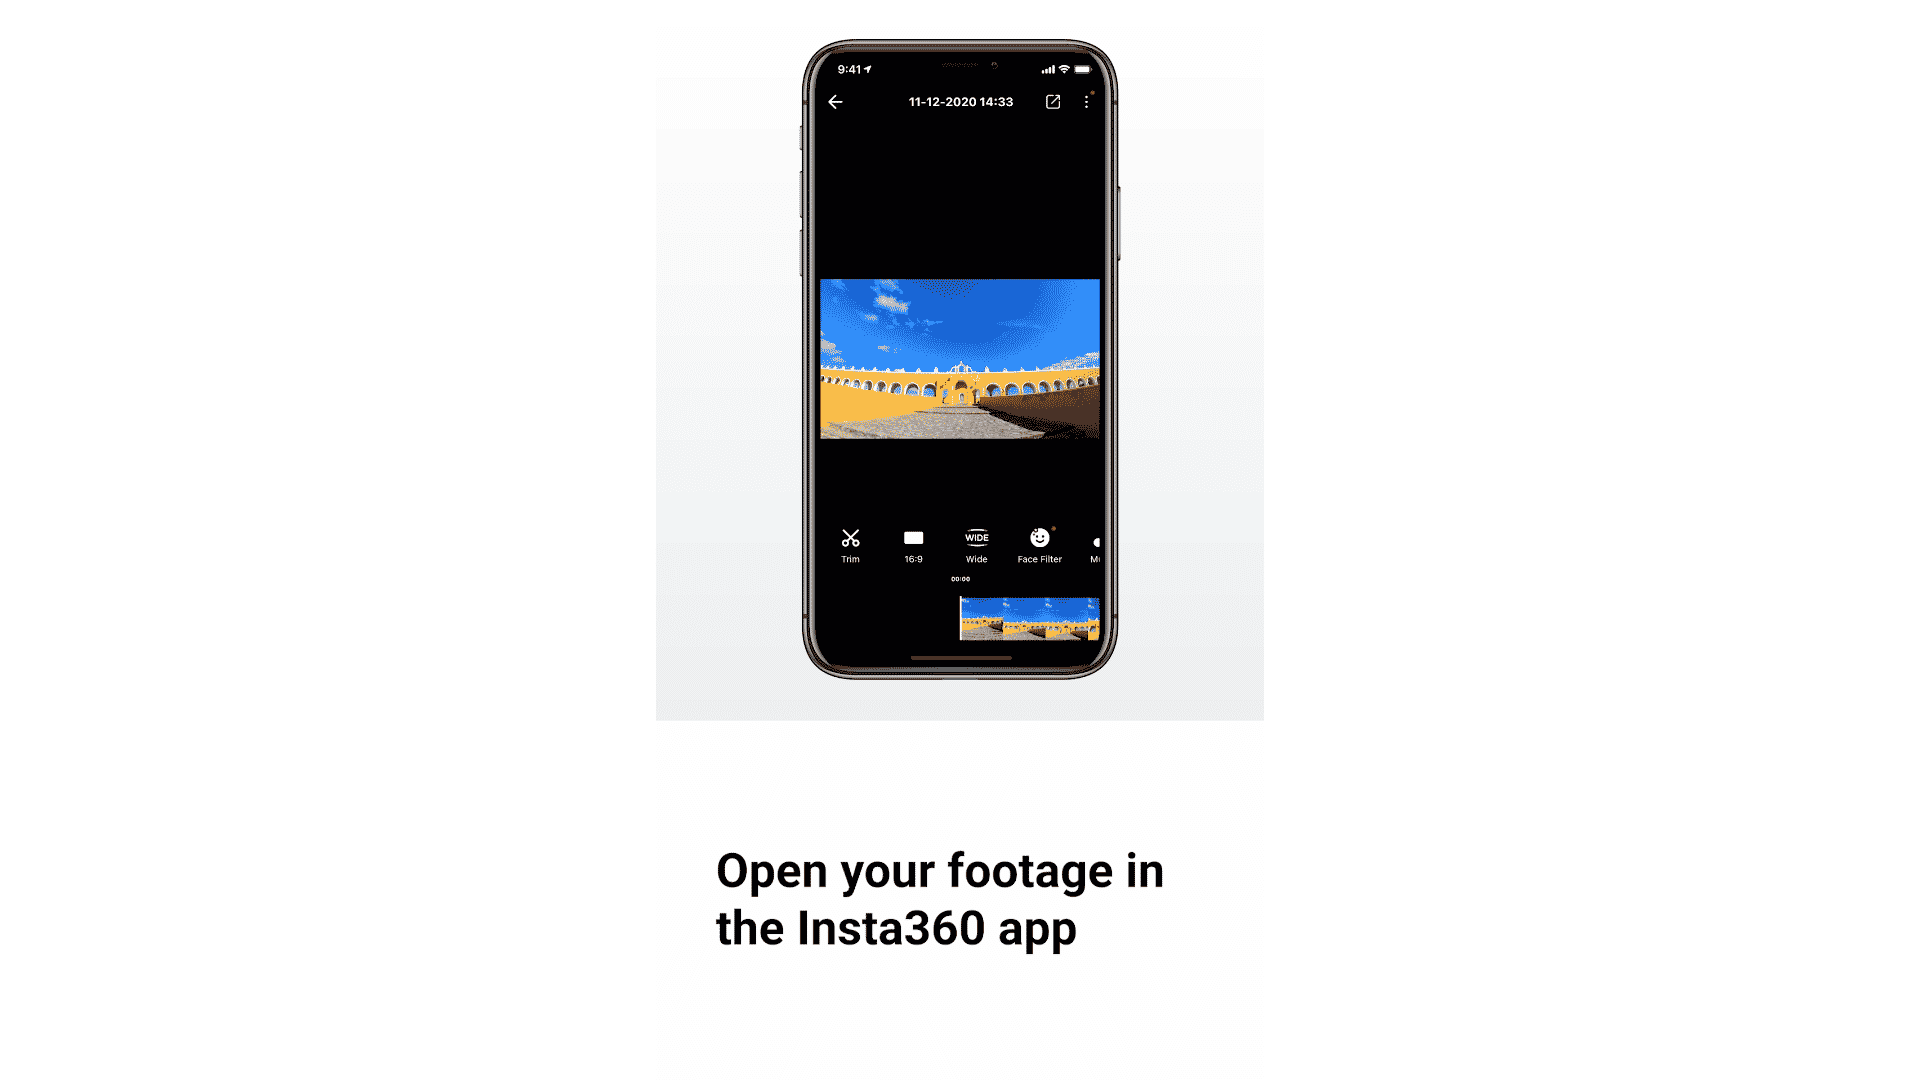 Mẹo sử dụng Insta360 GO 2: Cách loại bỏ méo ảnh góc rộng đoạn phim sau khi quay xong